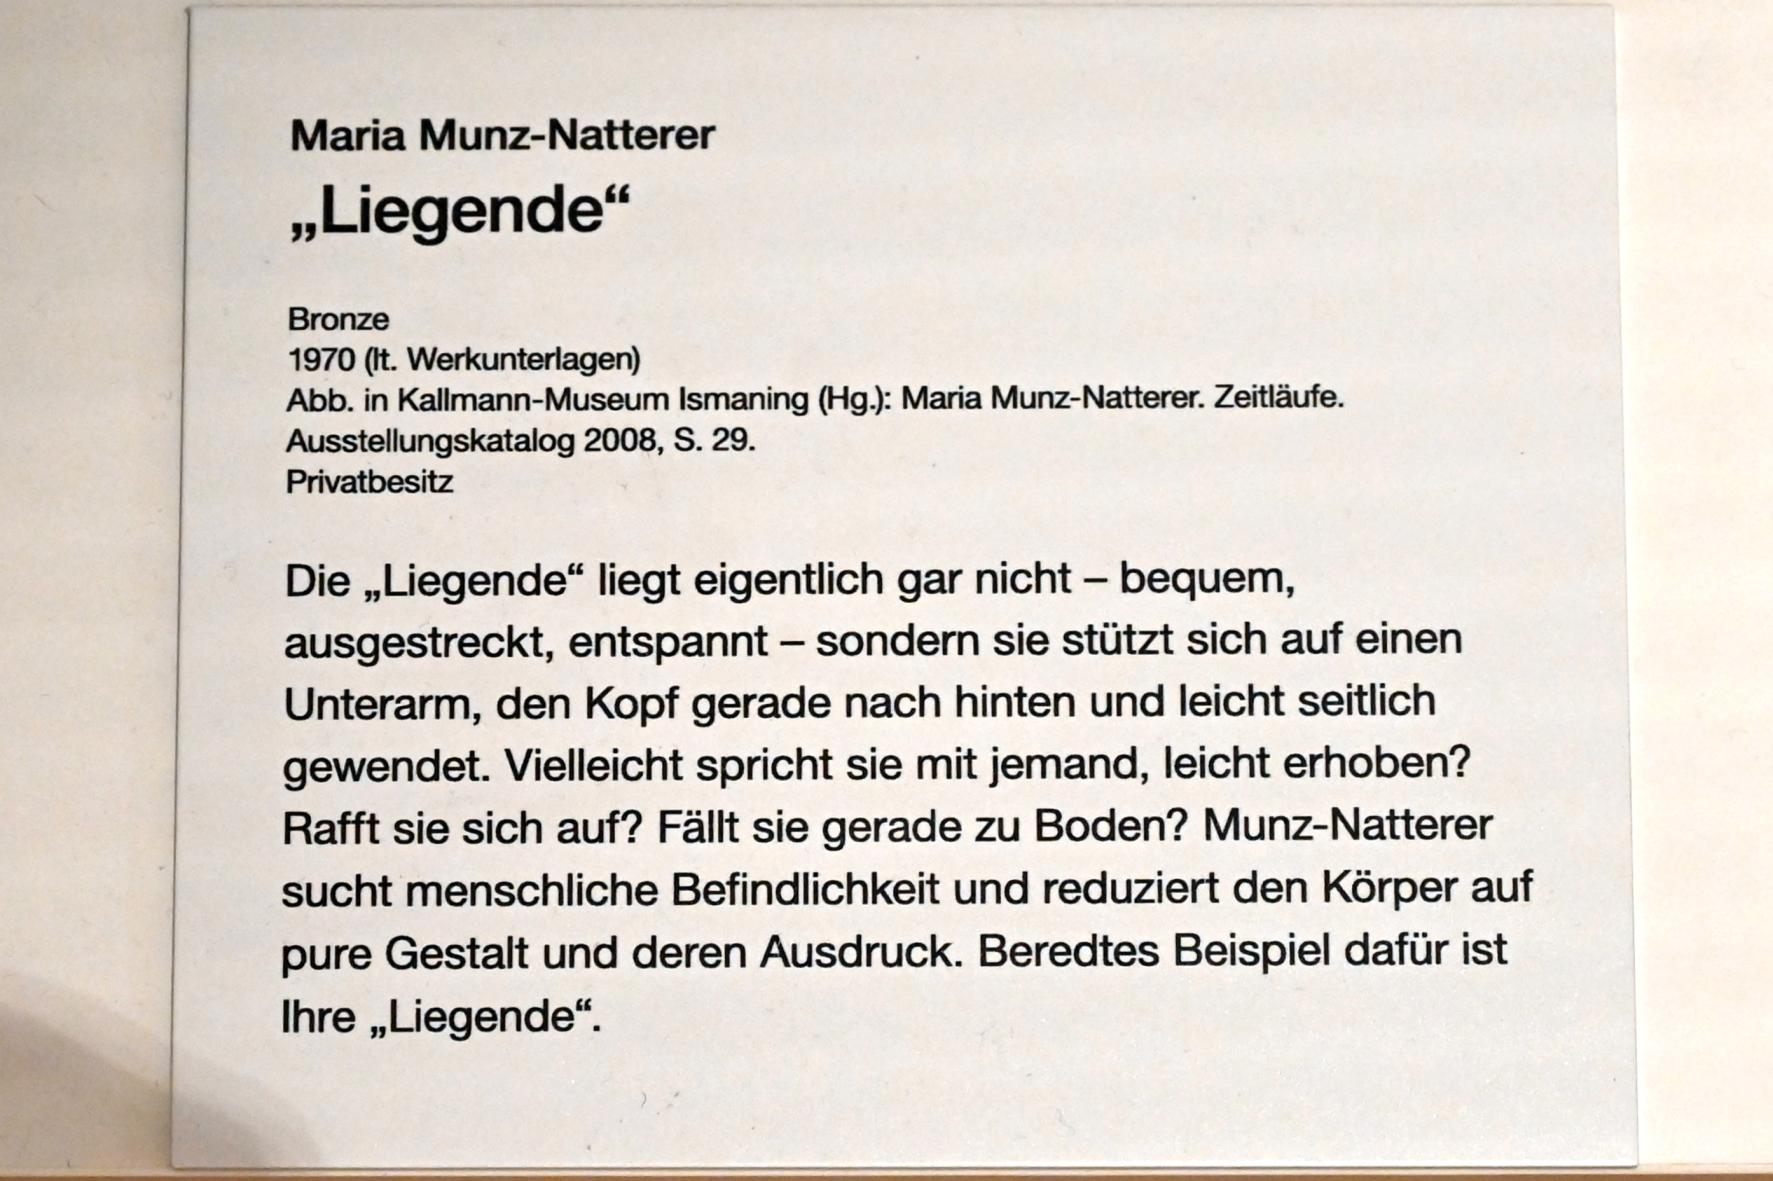 Maria Munz-Natterer (1970–1988), Liegende, Erding, Museum Erding, Erdinger Künstler, 1970, Bild 3/3